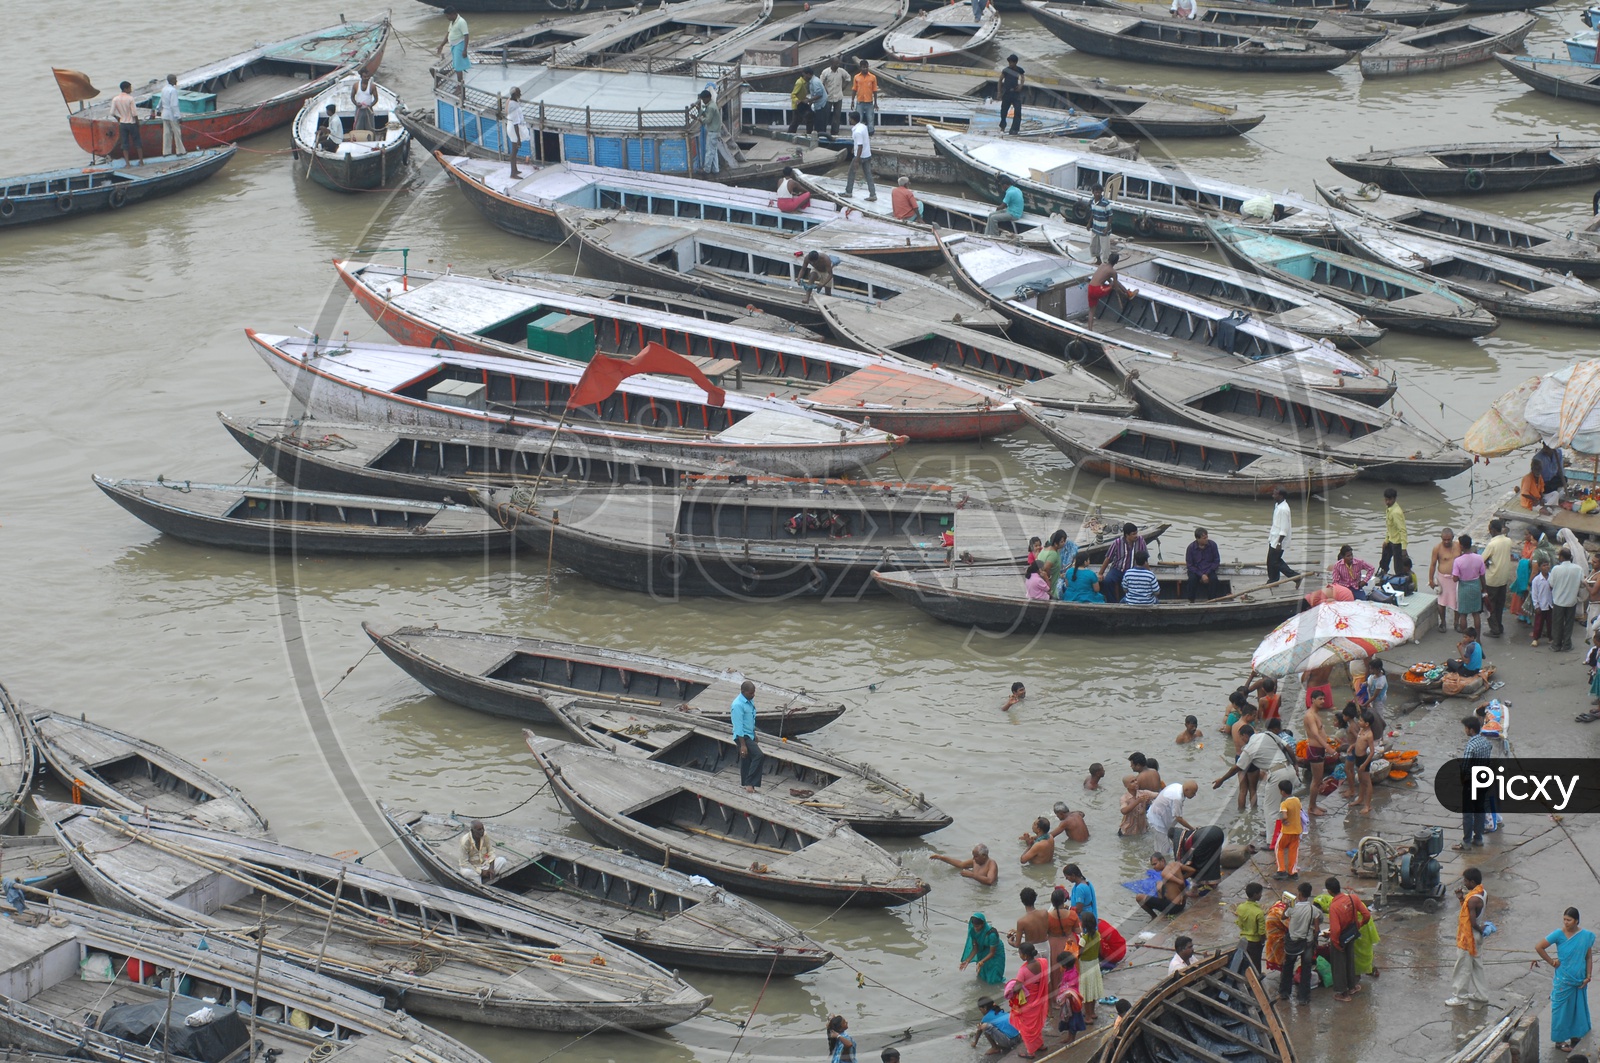 Sailing boats on the River bank of Ganga in Varanasi